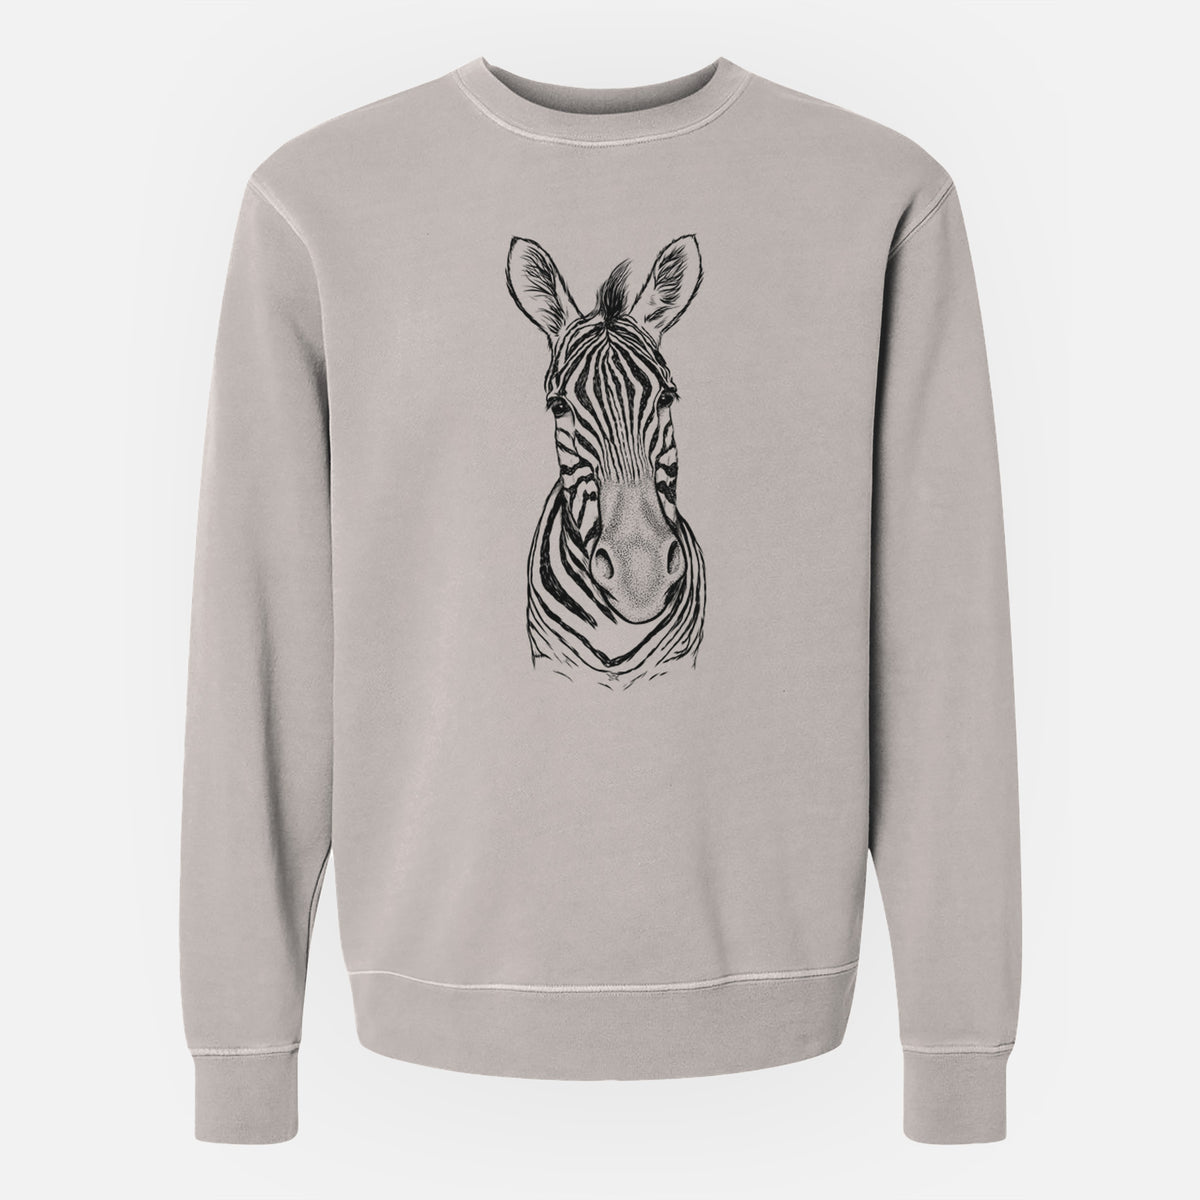 Damara Zebra - Equus quagga antiquorum - Unisex Pigment Dyed Crew Sweatshirt